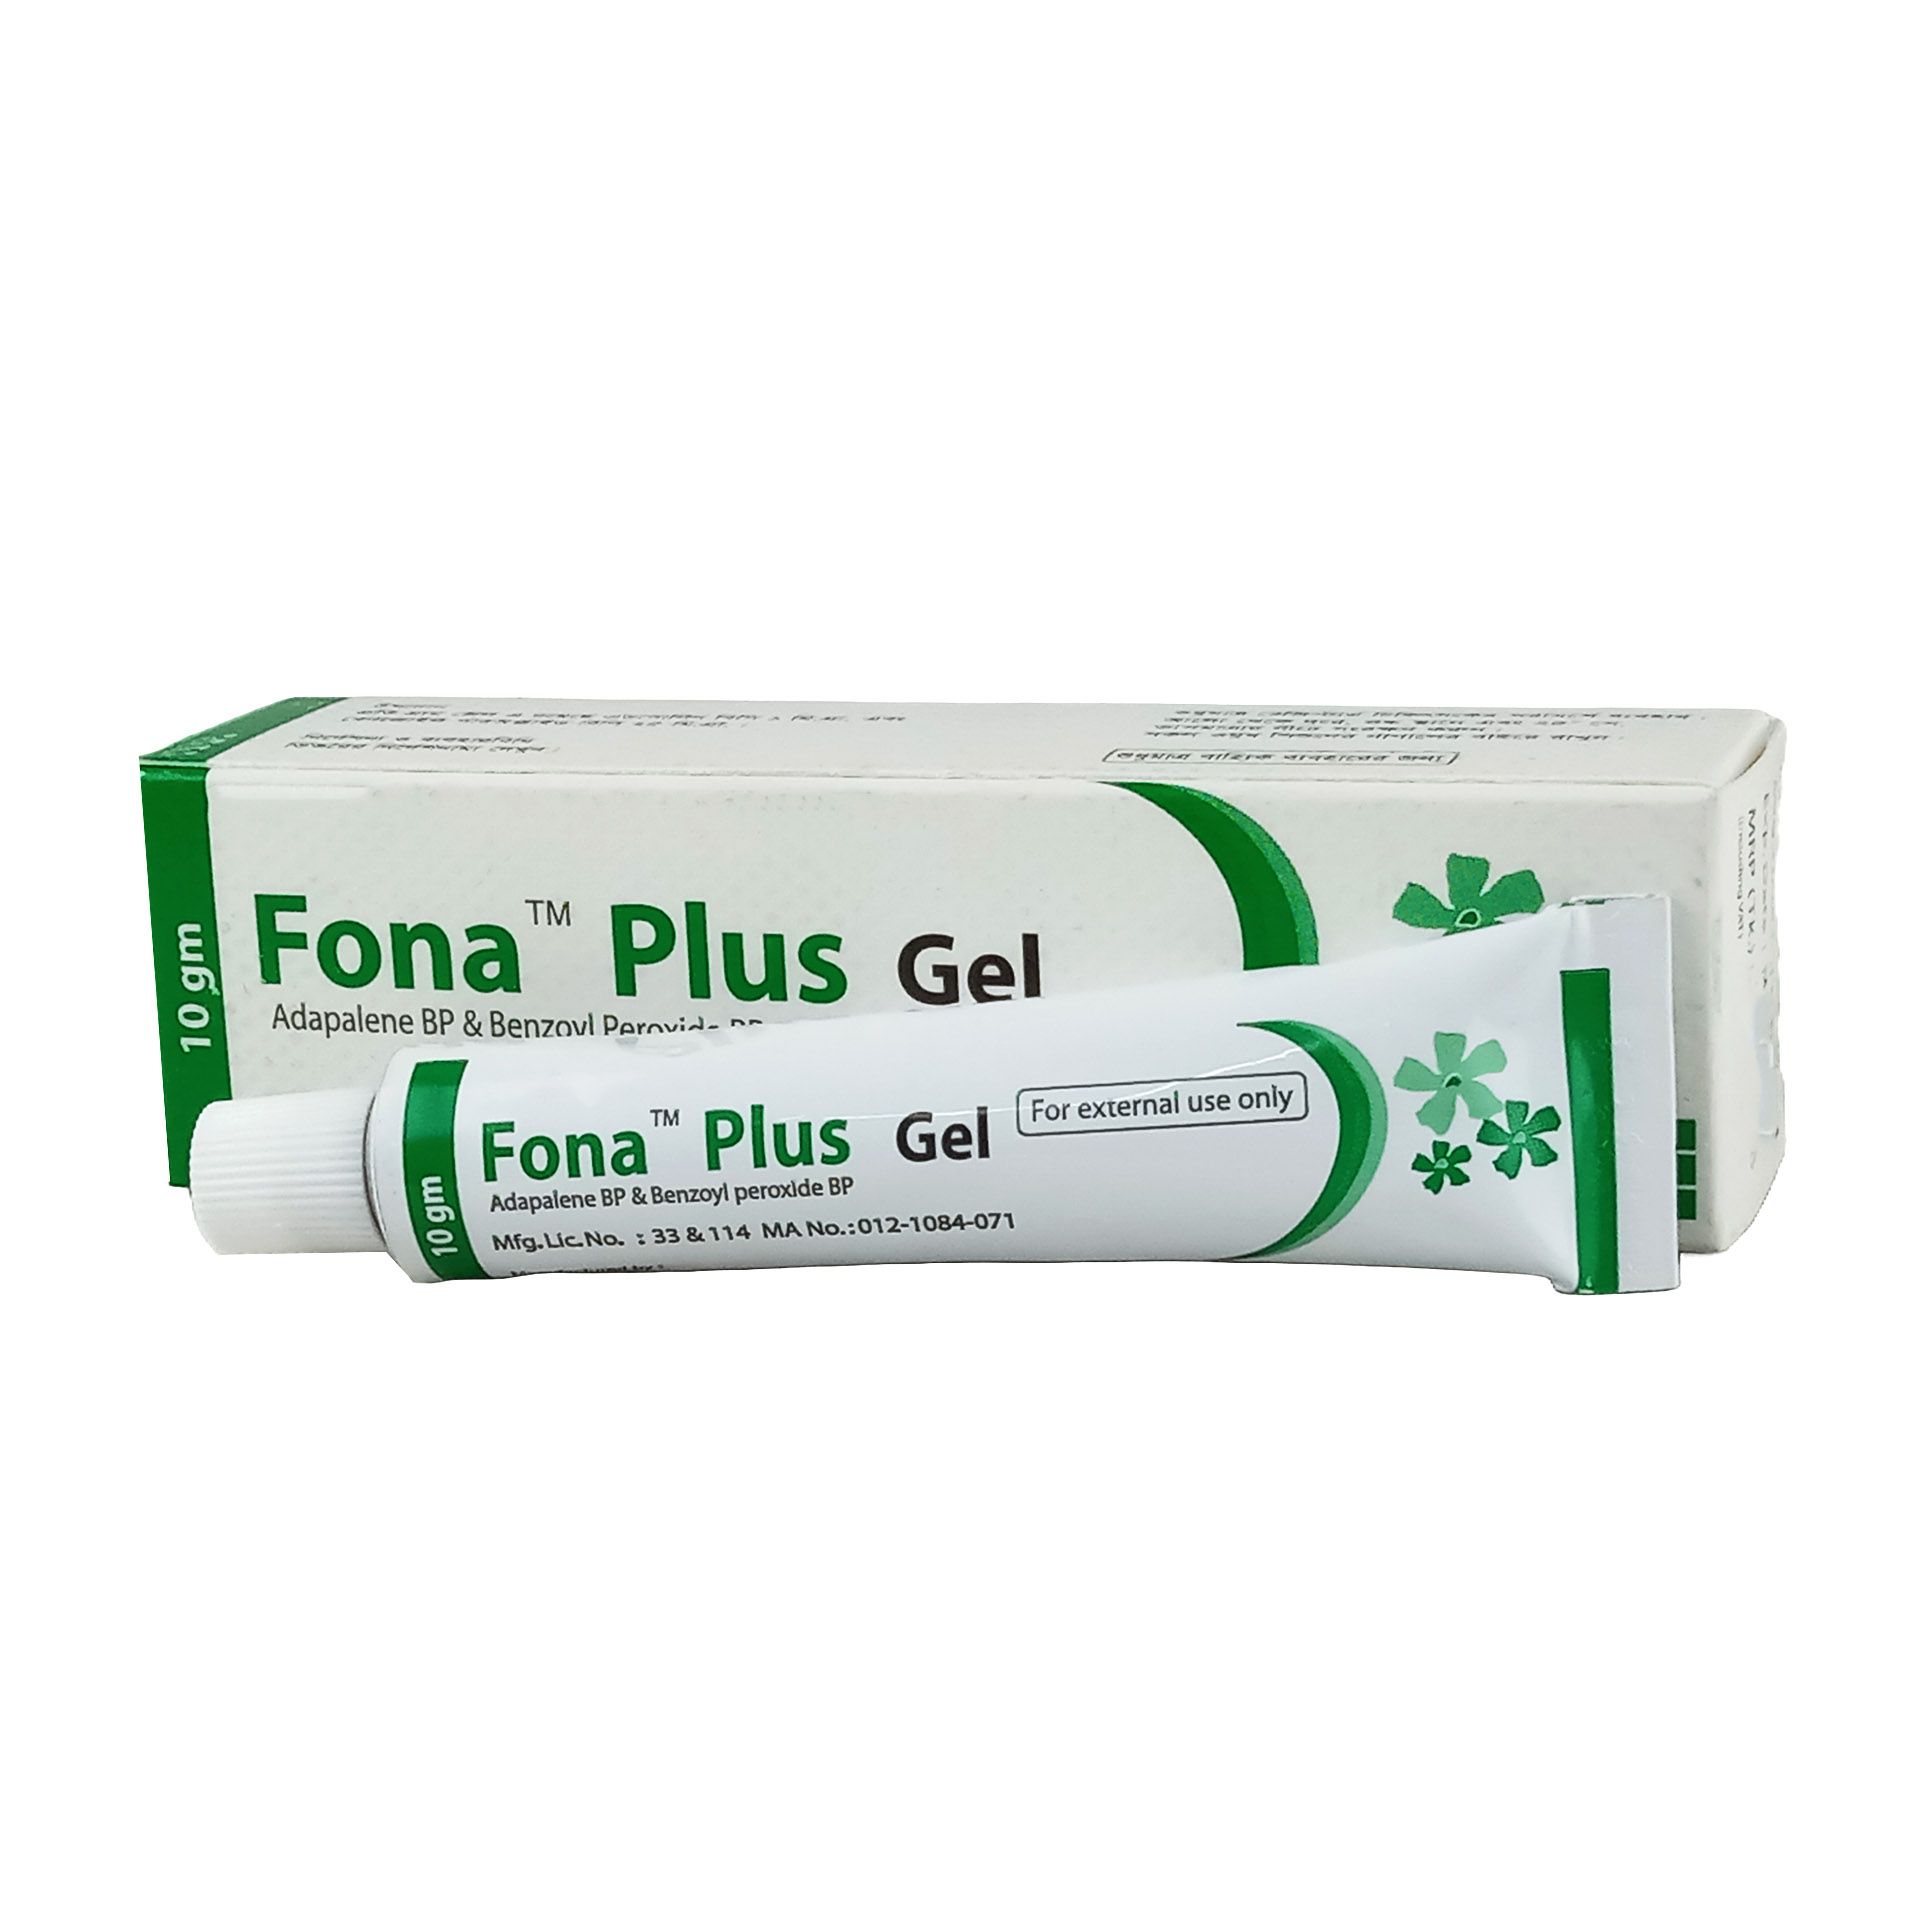 Fona Plus Gel 0.1% + 2.5% Gel